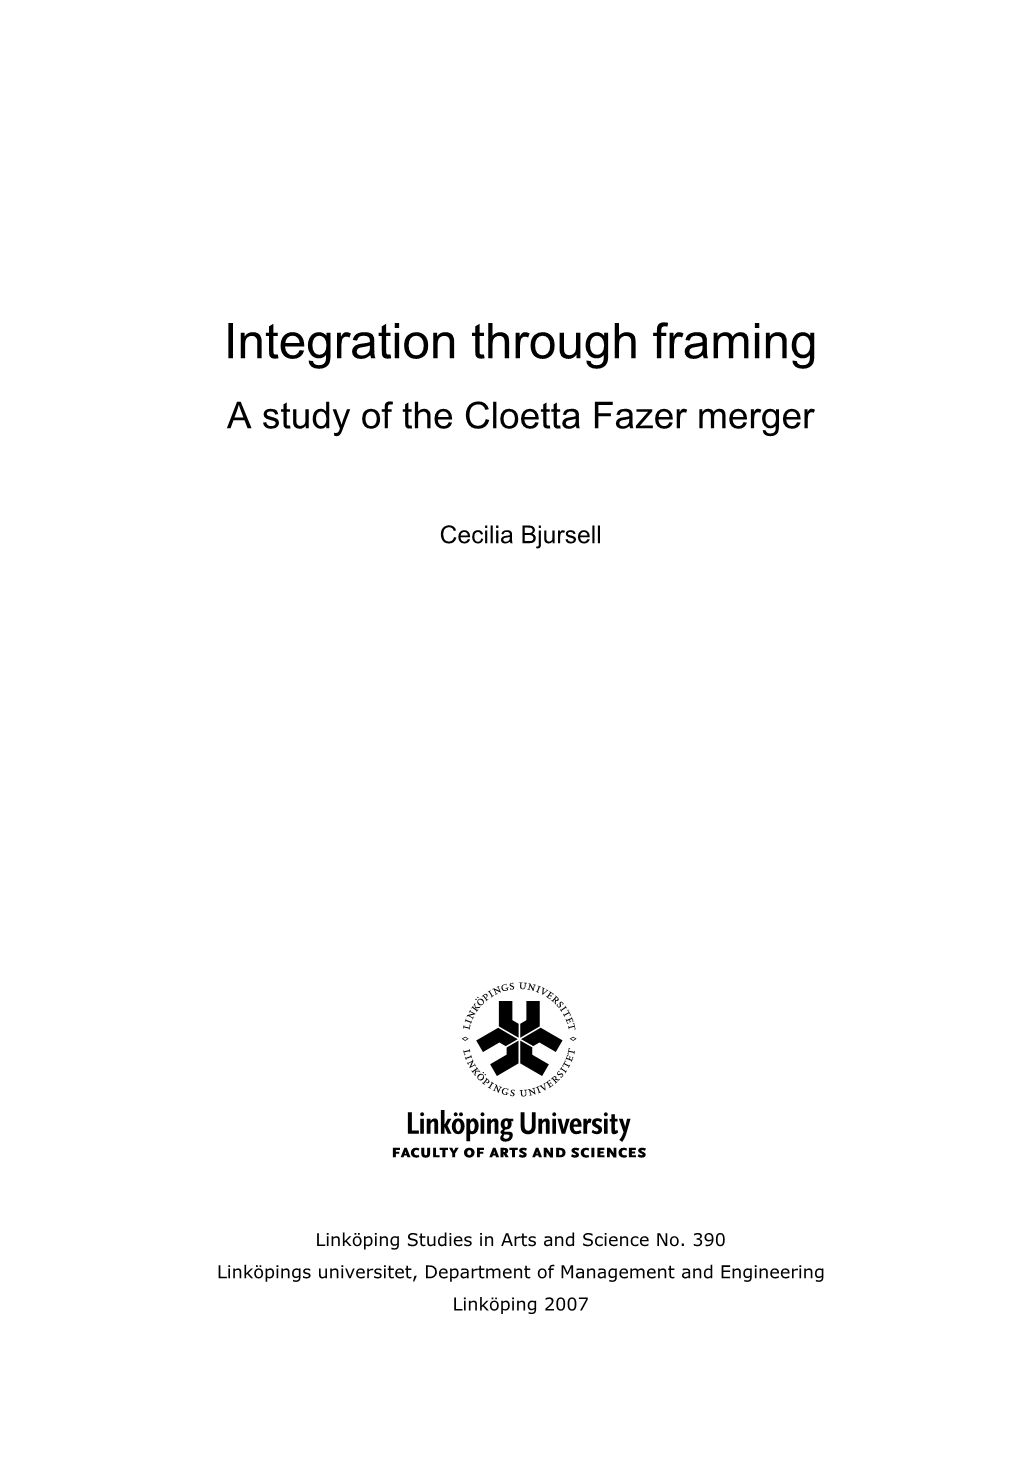 Integration Through Framing a Study of the Cloetta Fazer Merger